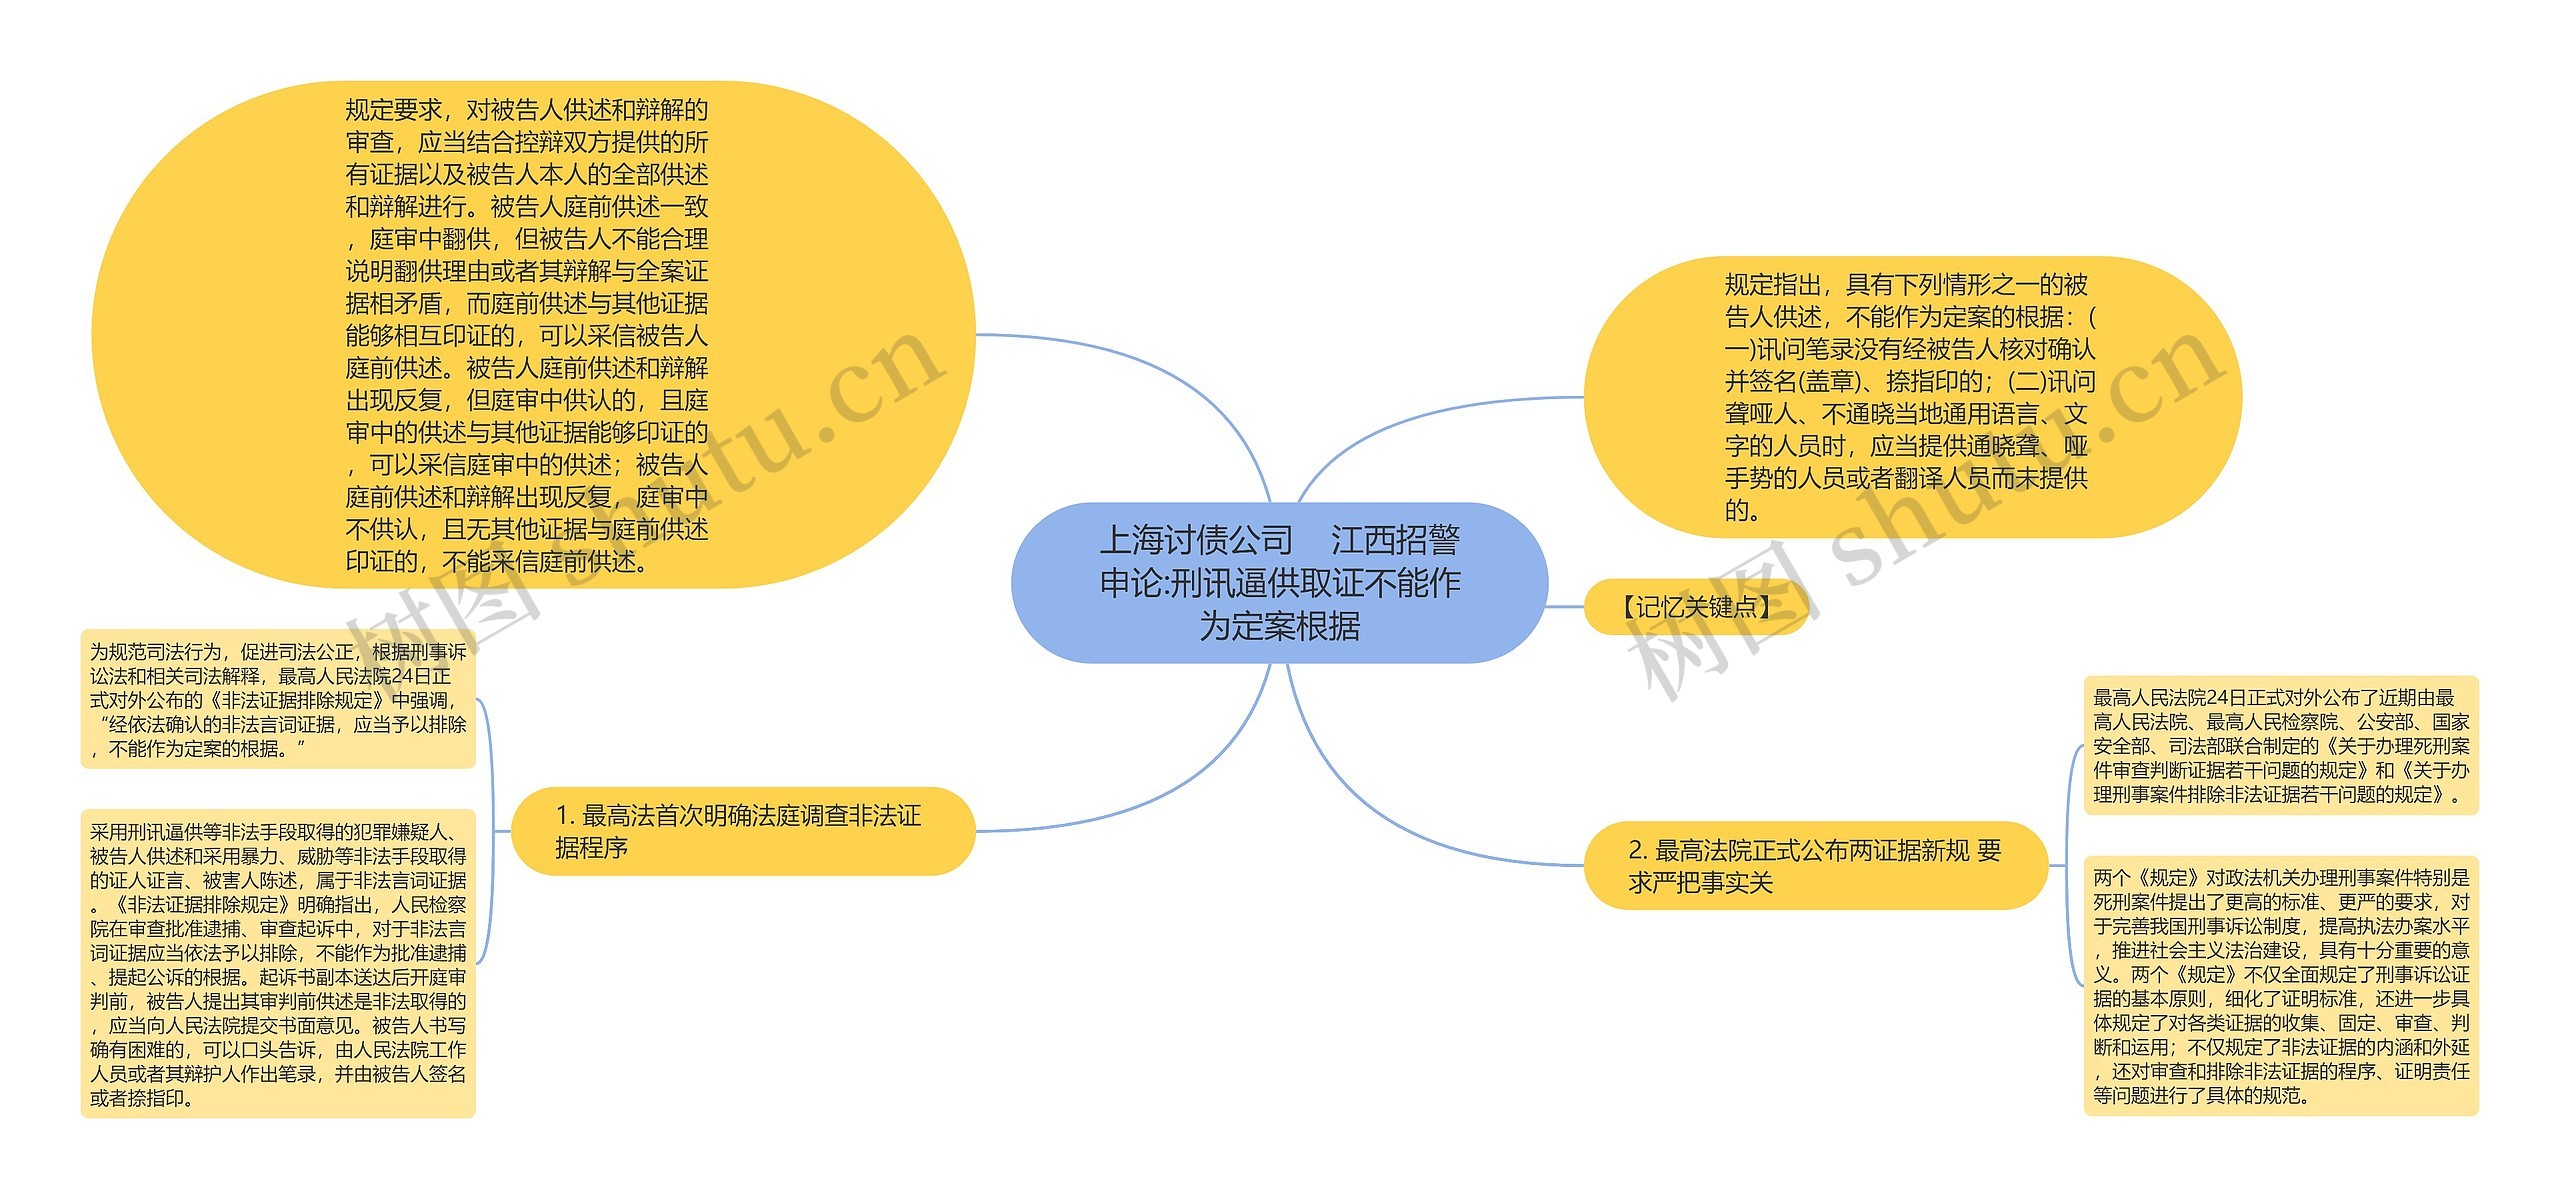 上海讨债公司    江西招警申论:刑讯逼供取证不能作为定案根据思维导图